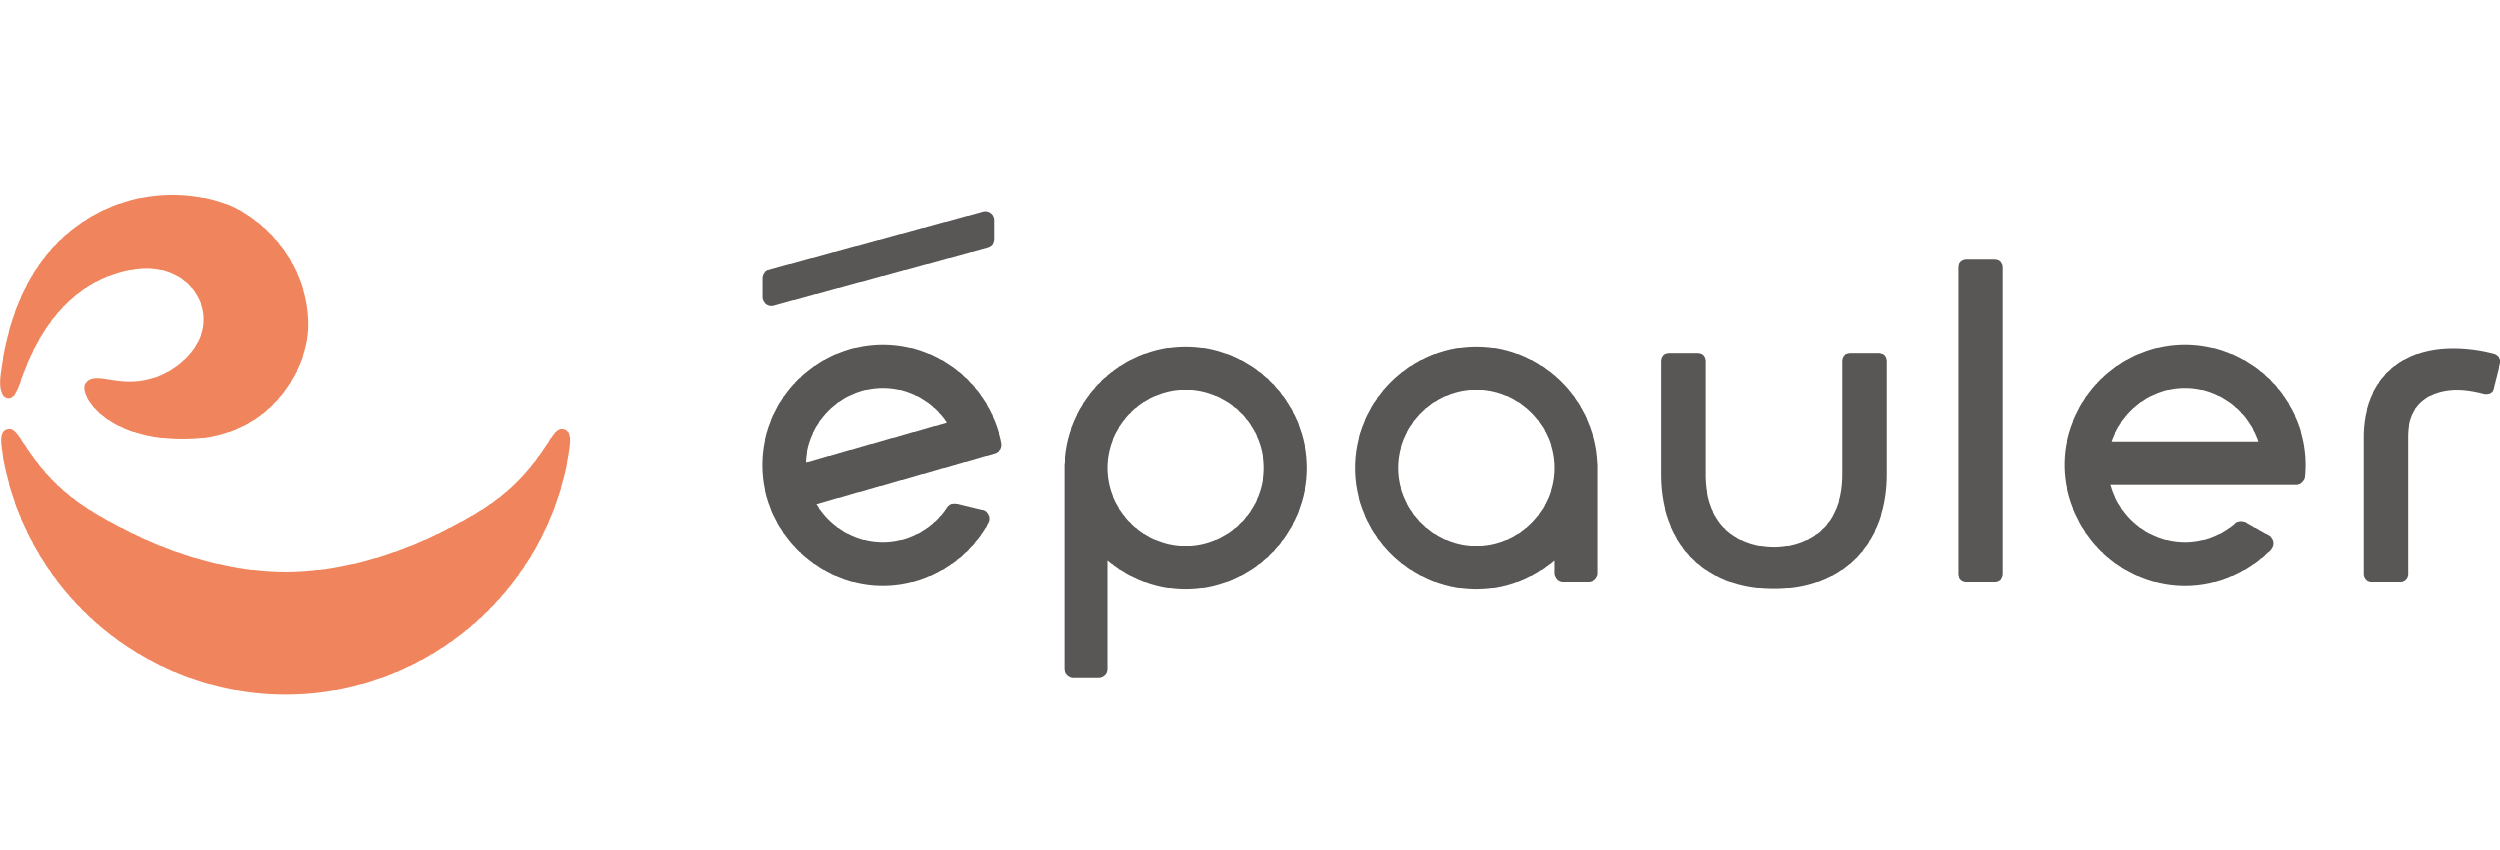 株式会社エポラのホームページを表示します